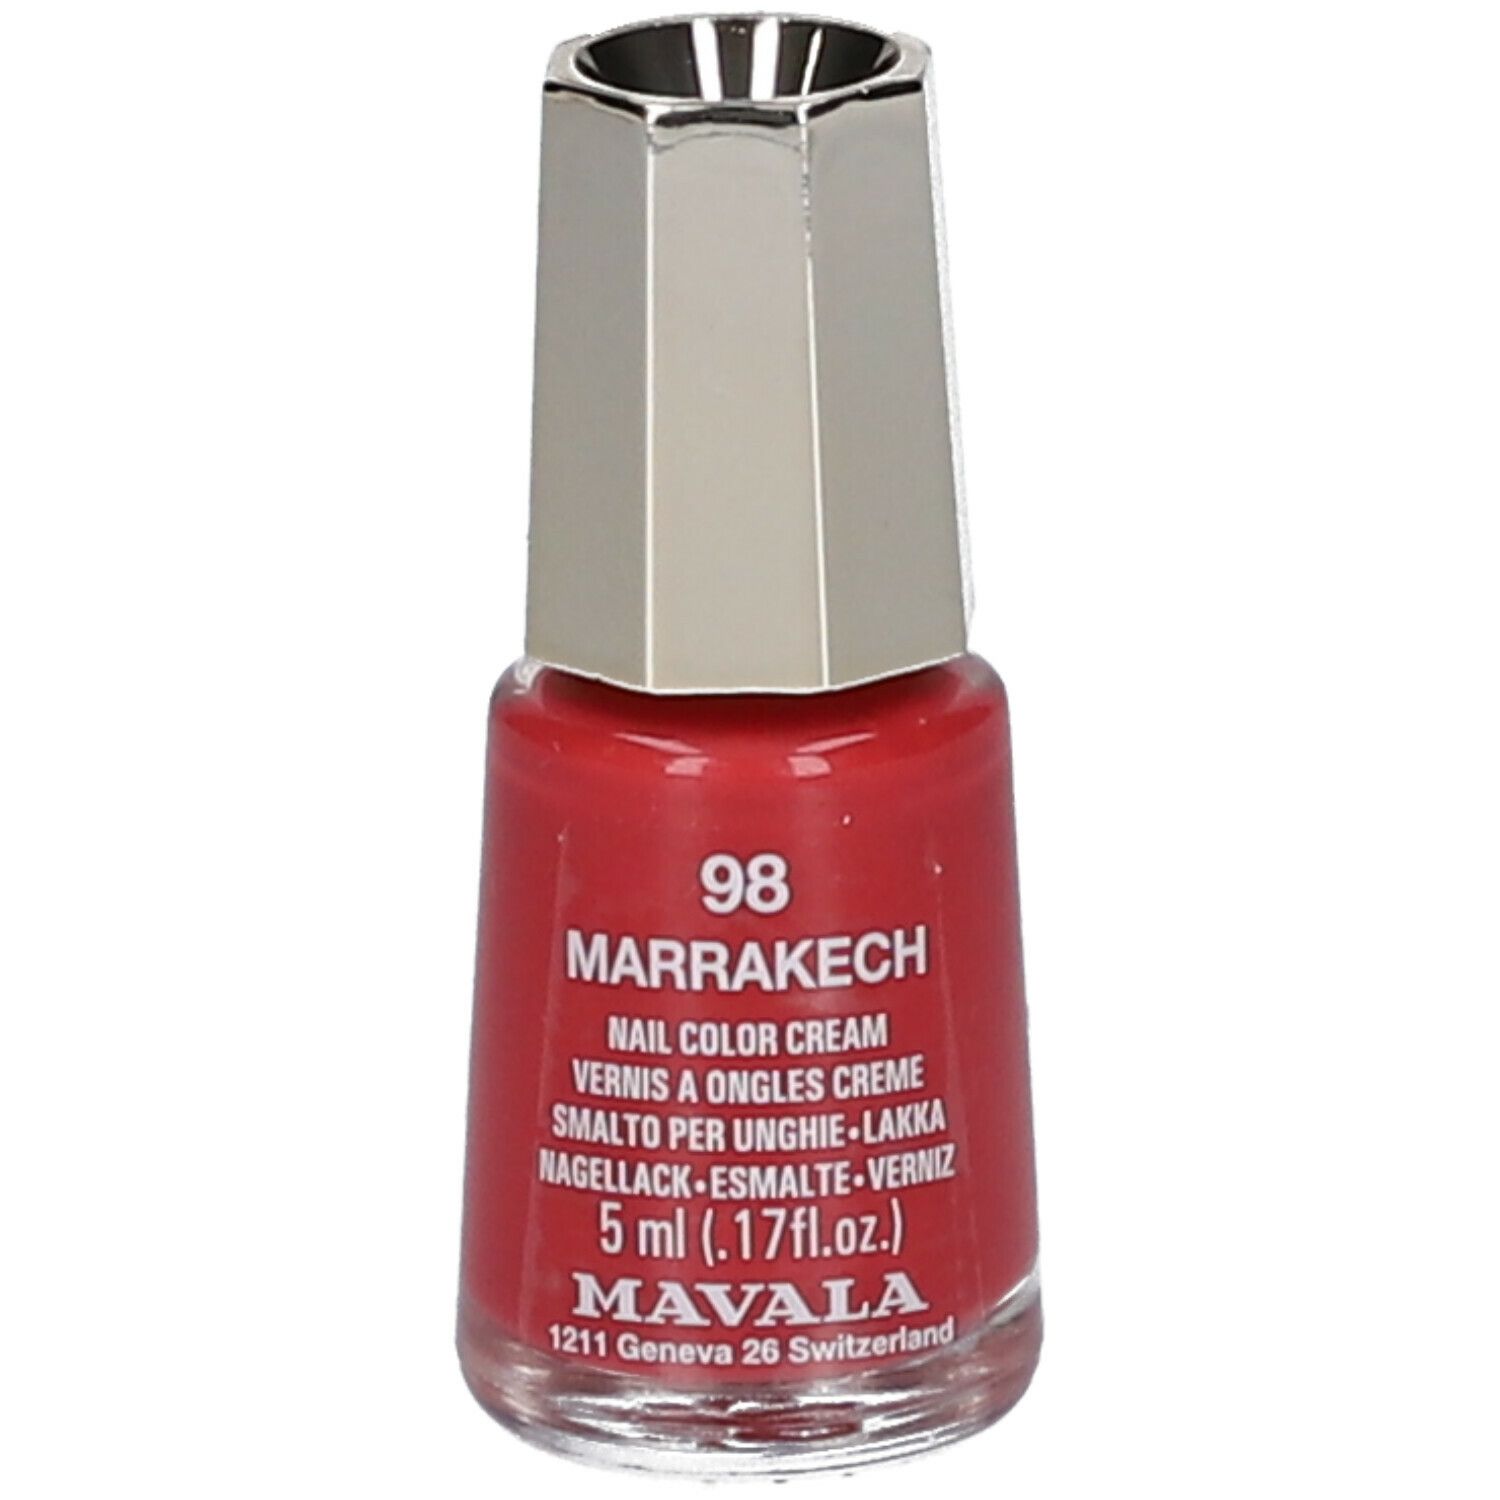 Mavala Mini Color vernis à ongles crème - Marrakech 098